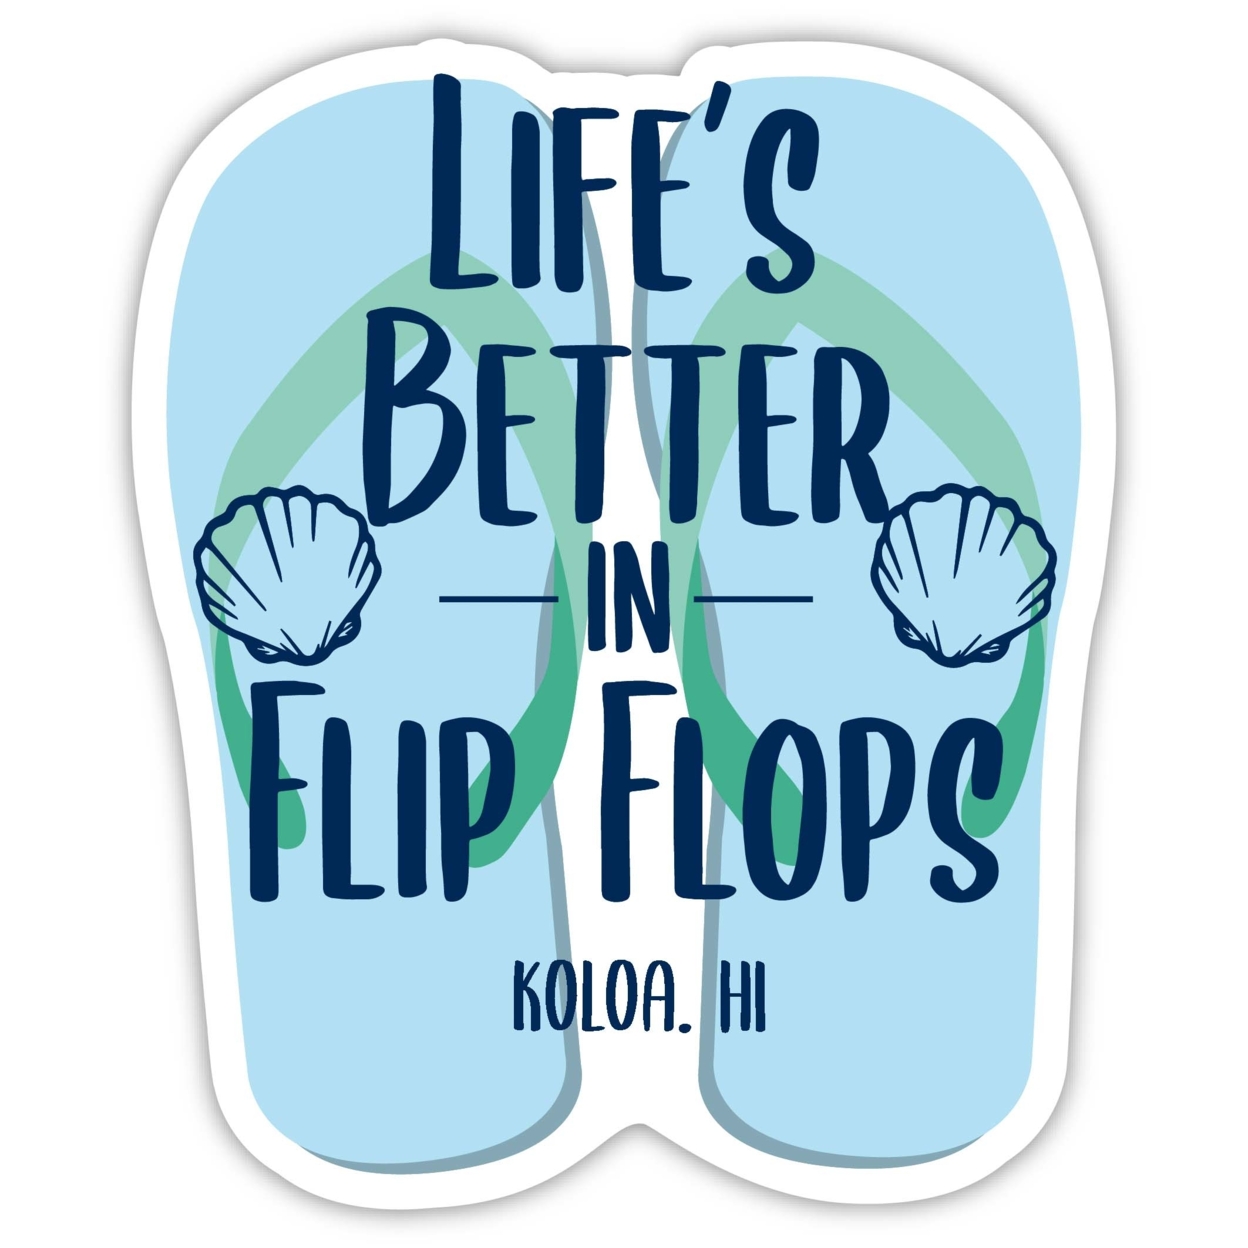 Koloa Hawaii Souvenir 4 Inch Vinyl Decal Sticker Flip Flop Design